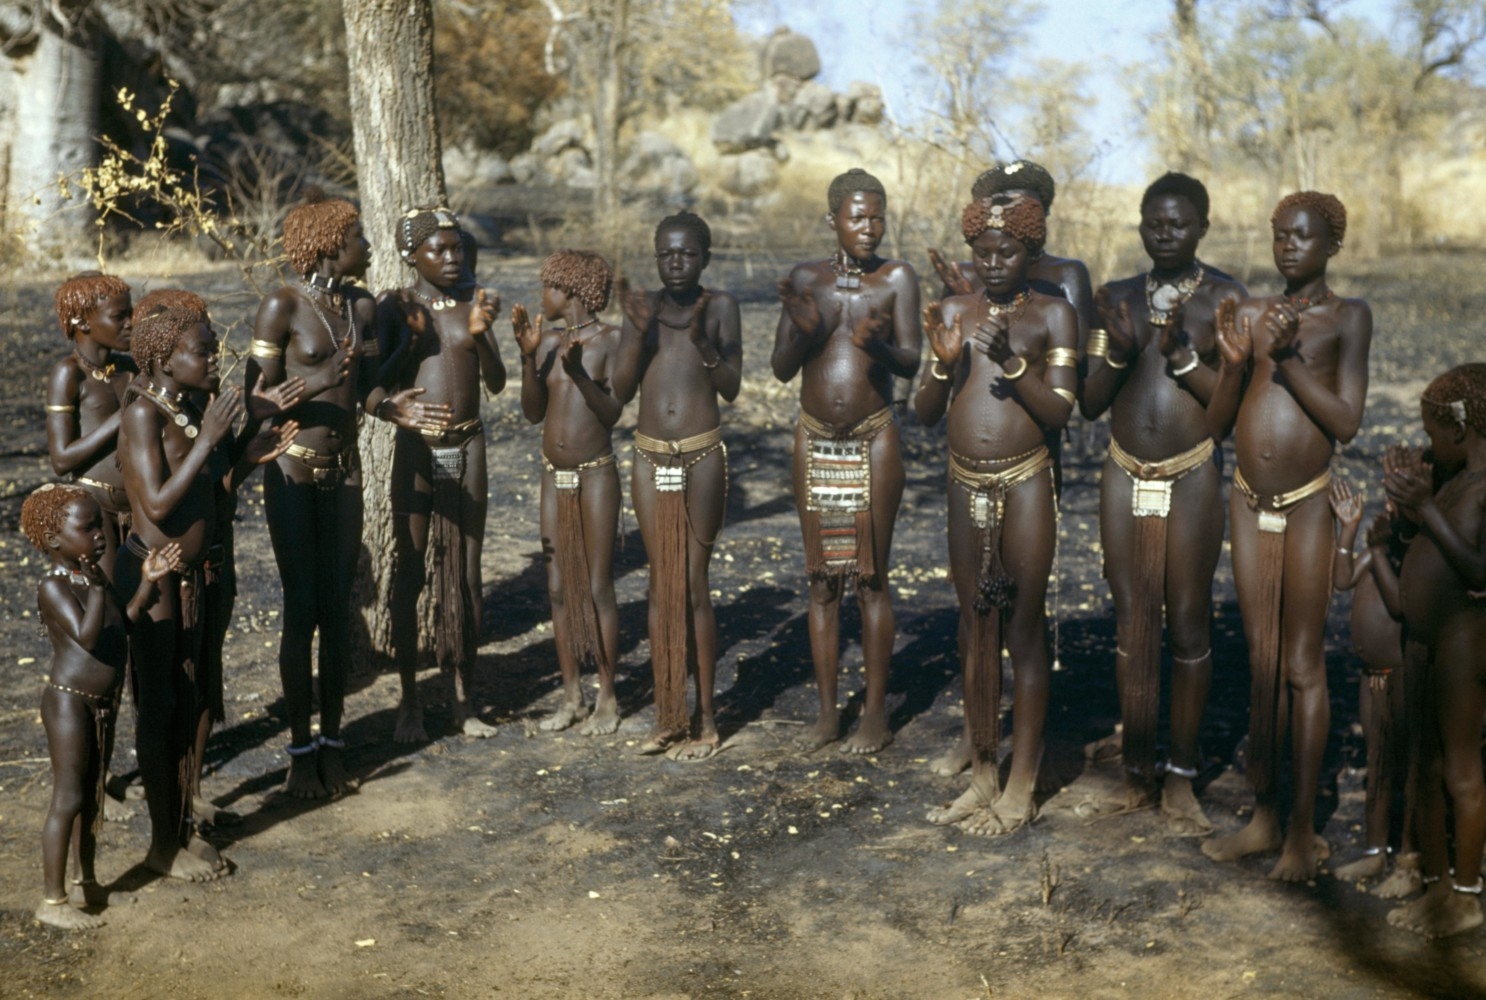 Голые папуаски из племени лесбиянок фото